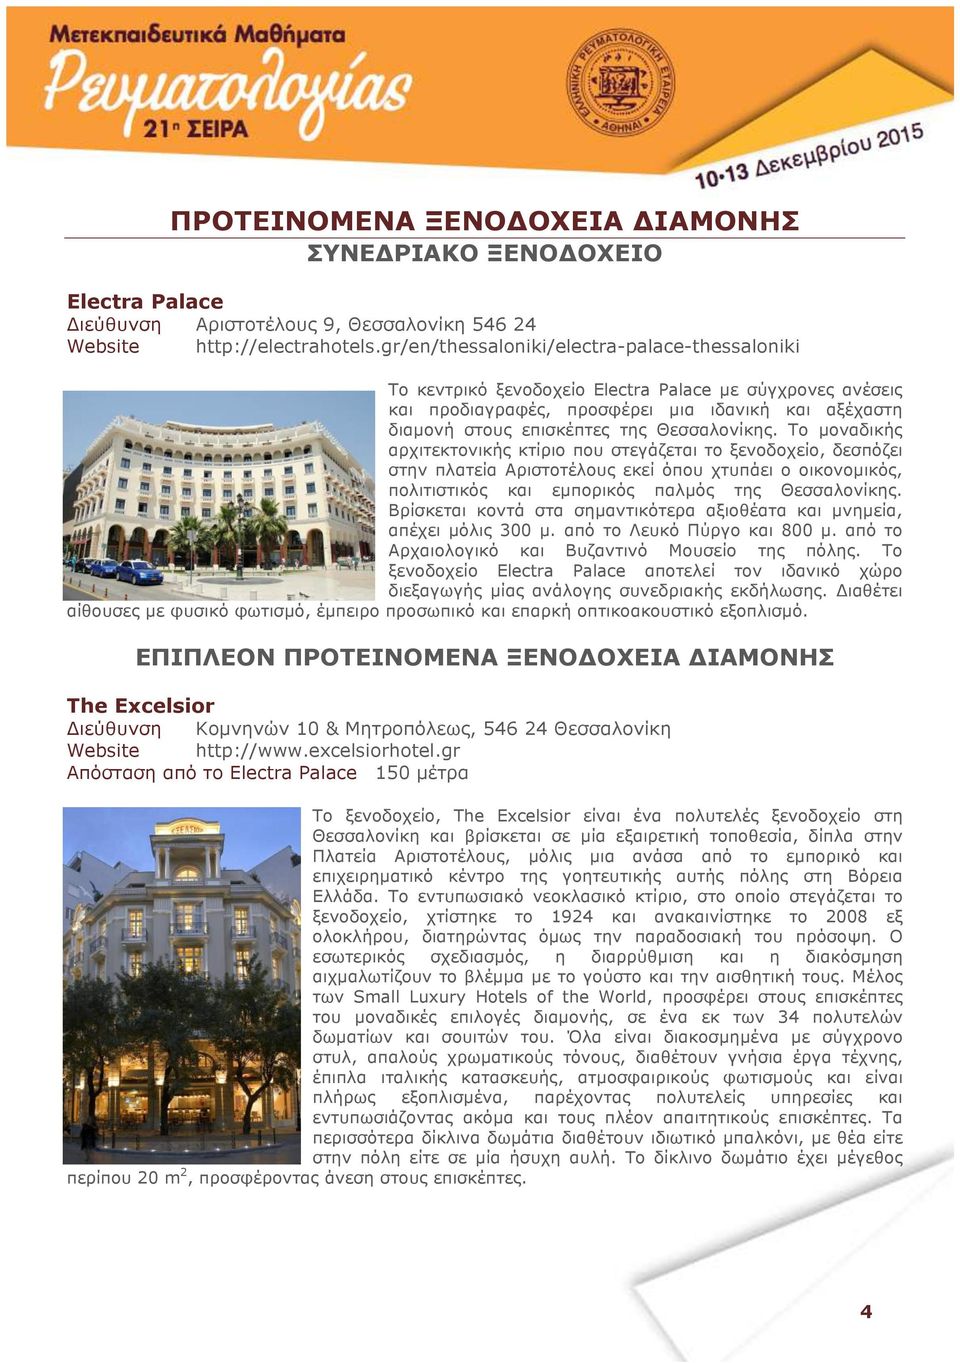 Θεσσαλονίκης. Το µοναδικής αρχιτεκτονικής κτίριο που στεγάζεται το ξενοδοχείο, δεσπόζει στην πλατεία Αριστοτέλους εκεί όπου χτυπάει ο οικονοµικός, πολιτιστικός και εµπορικός παλµός της Θεσσαλονίκης.